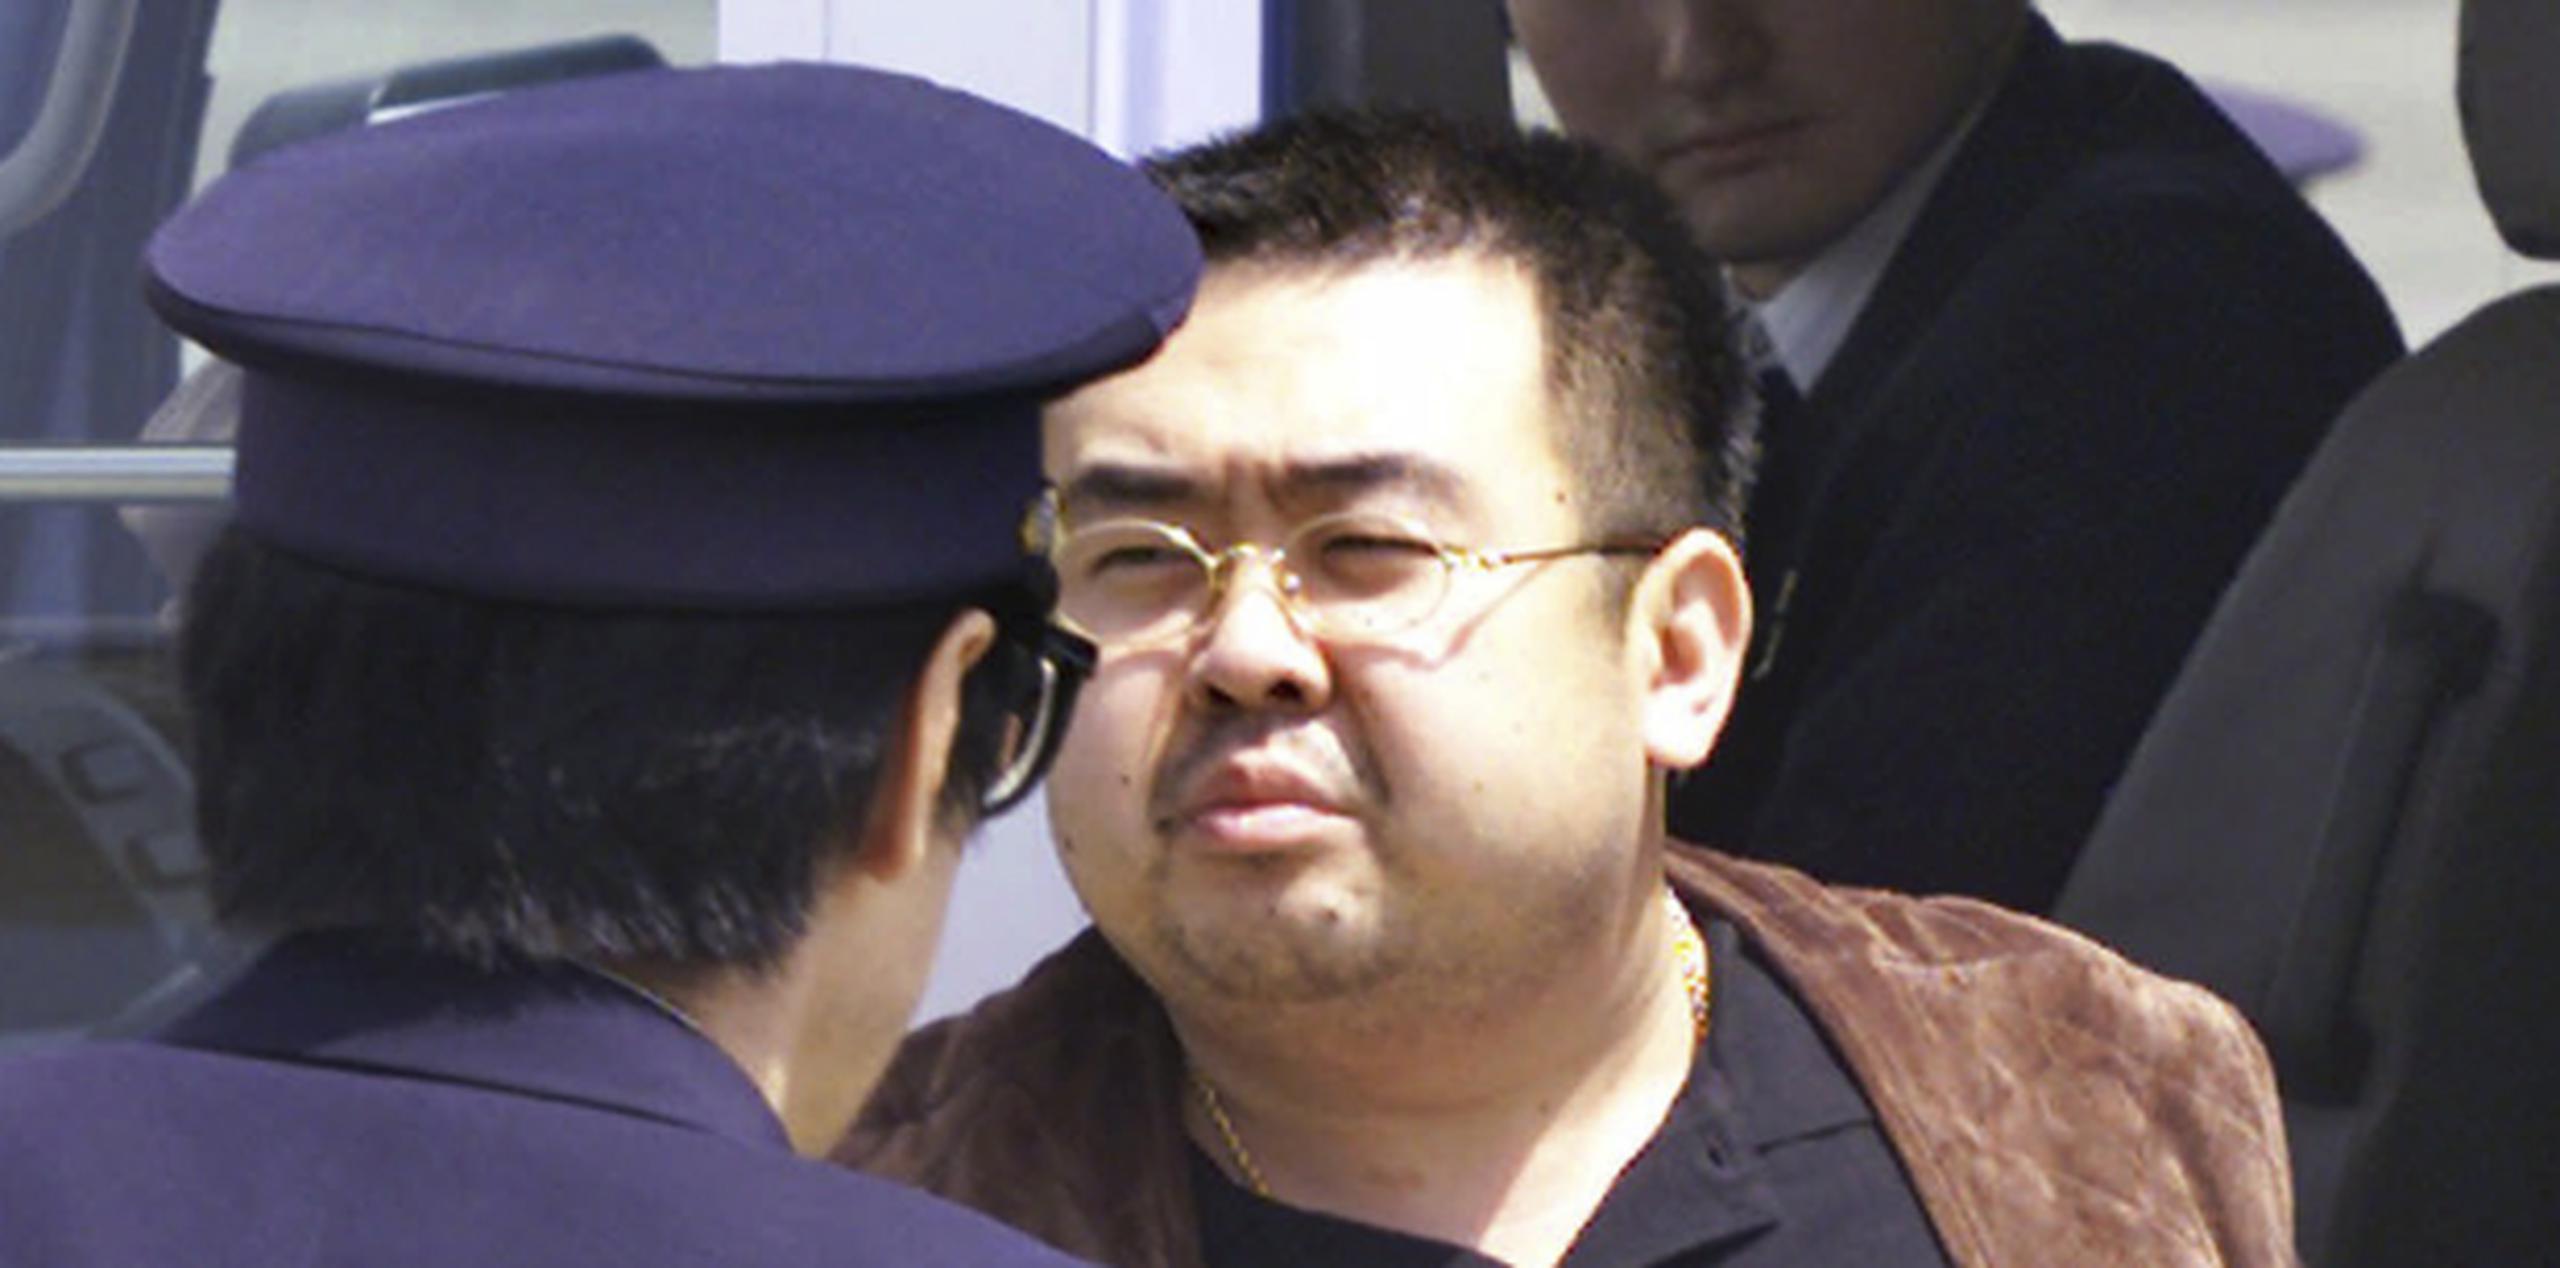 Aunque Kim Jong Nam no era una amenaza política clara para su hermano, podría haber sido considerado un rival potencial en la dictadura dinástica del país. (AP / Itsuo Inouye)